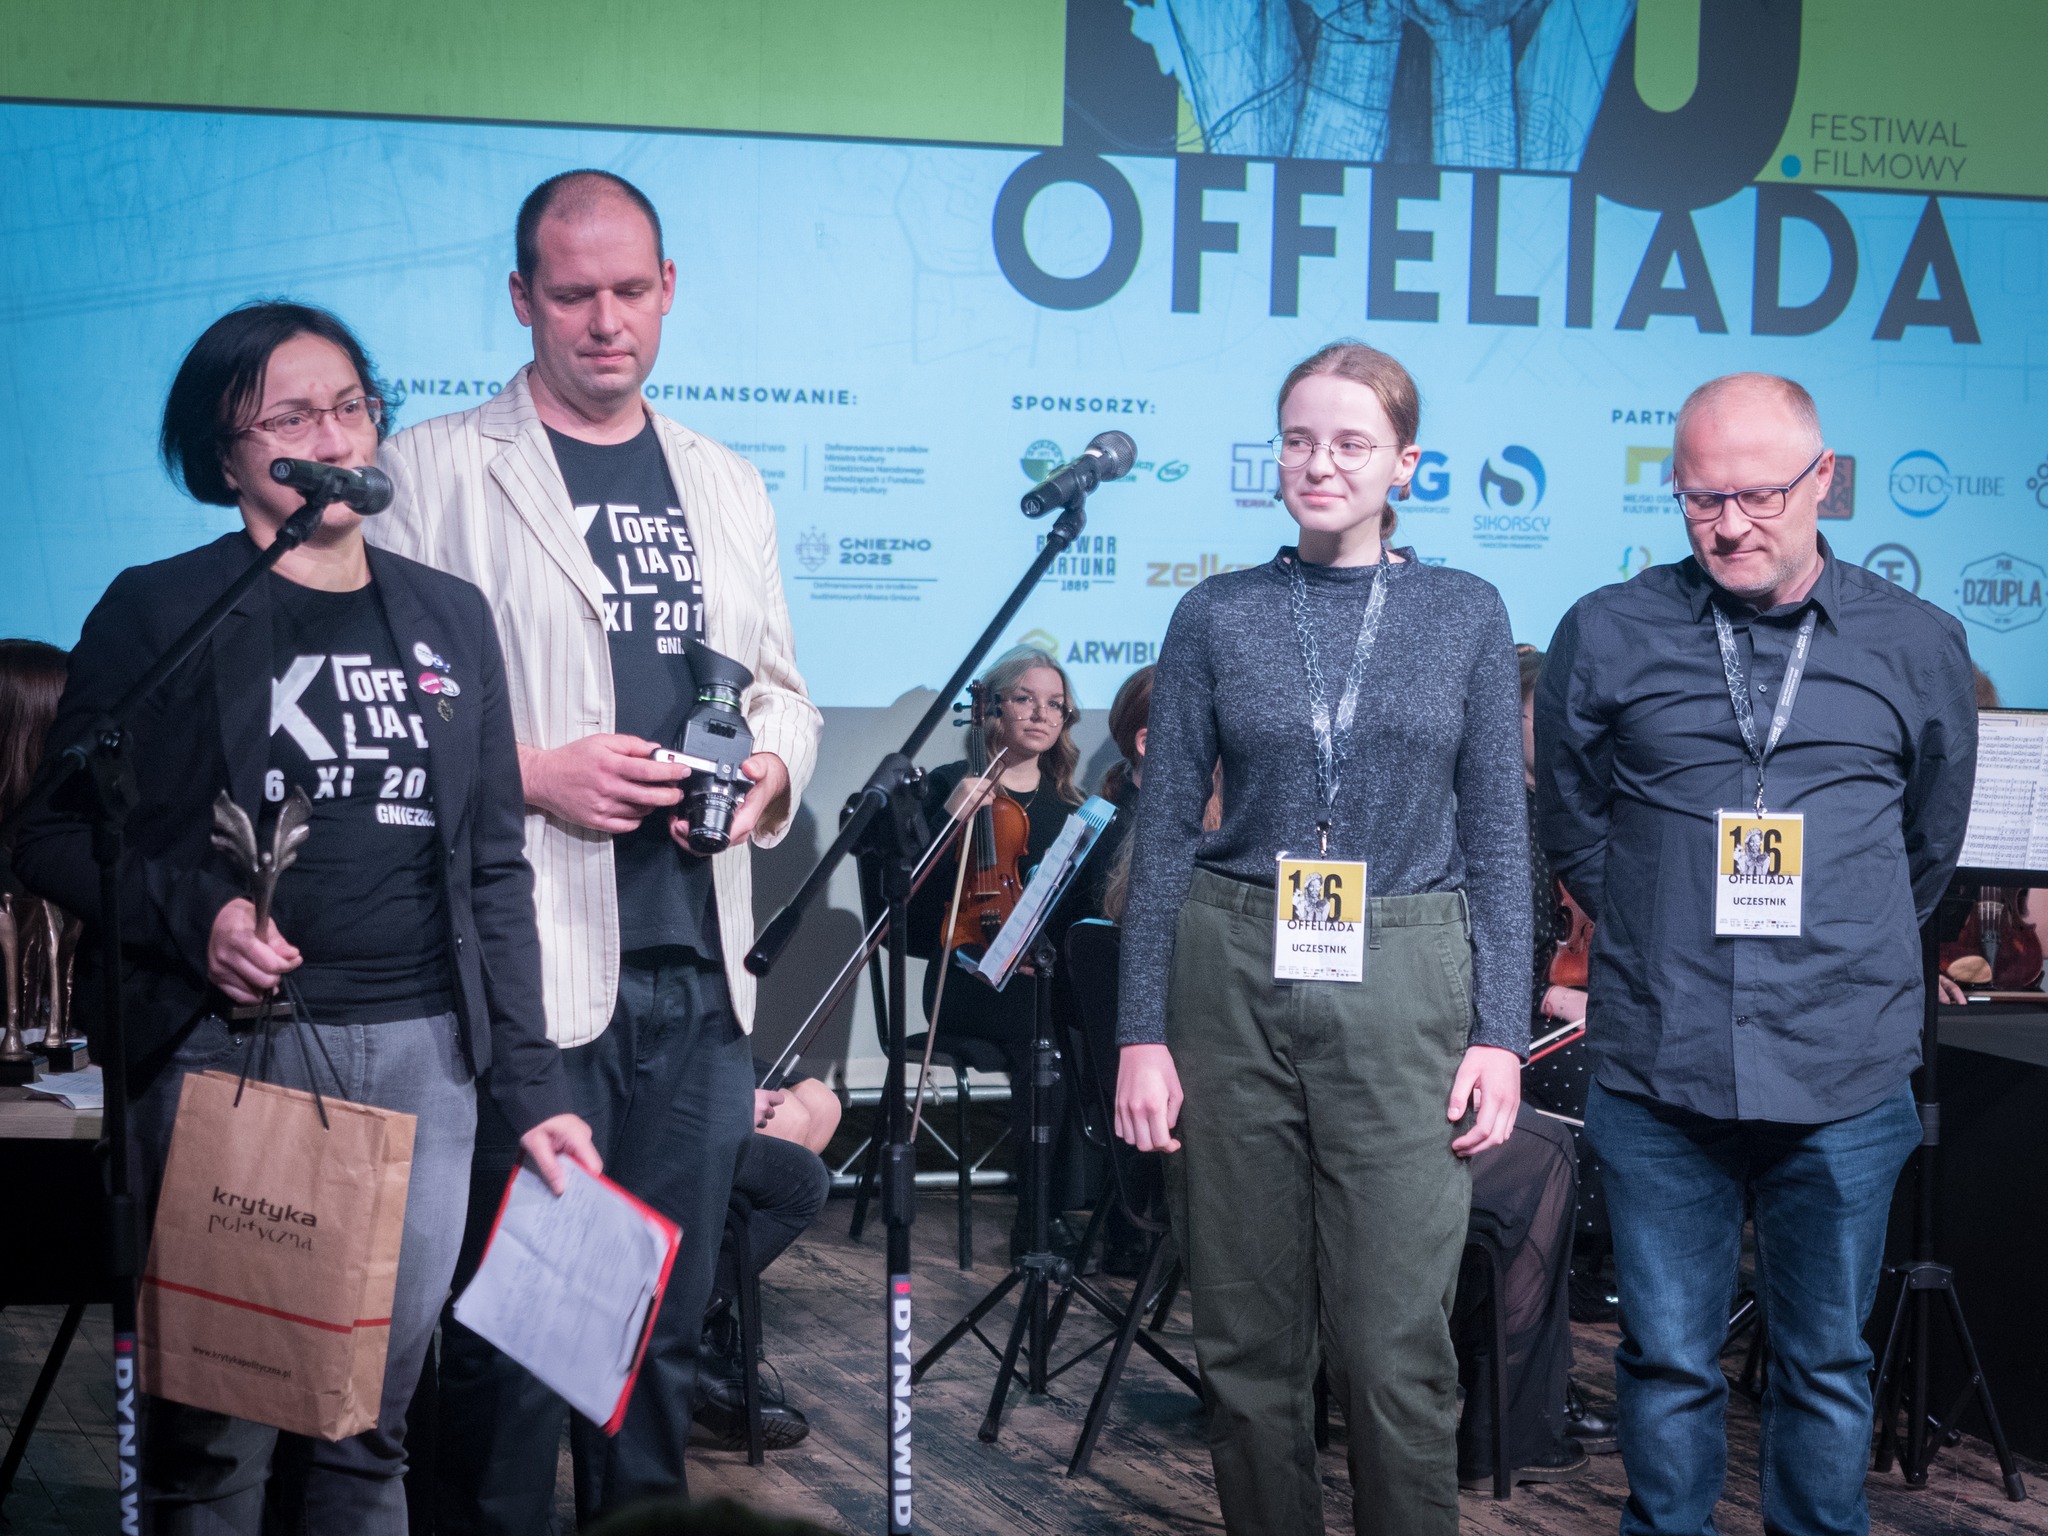 Festiwal Filmowy Offeliada